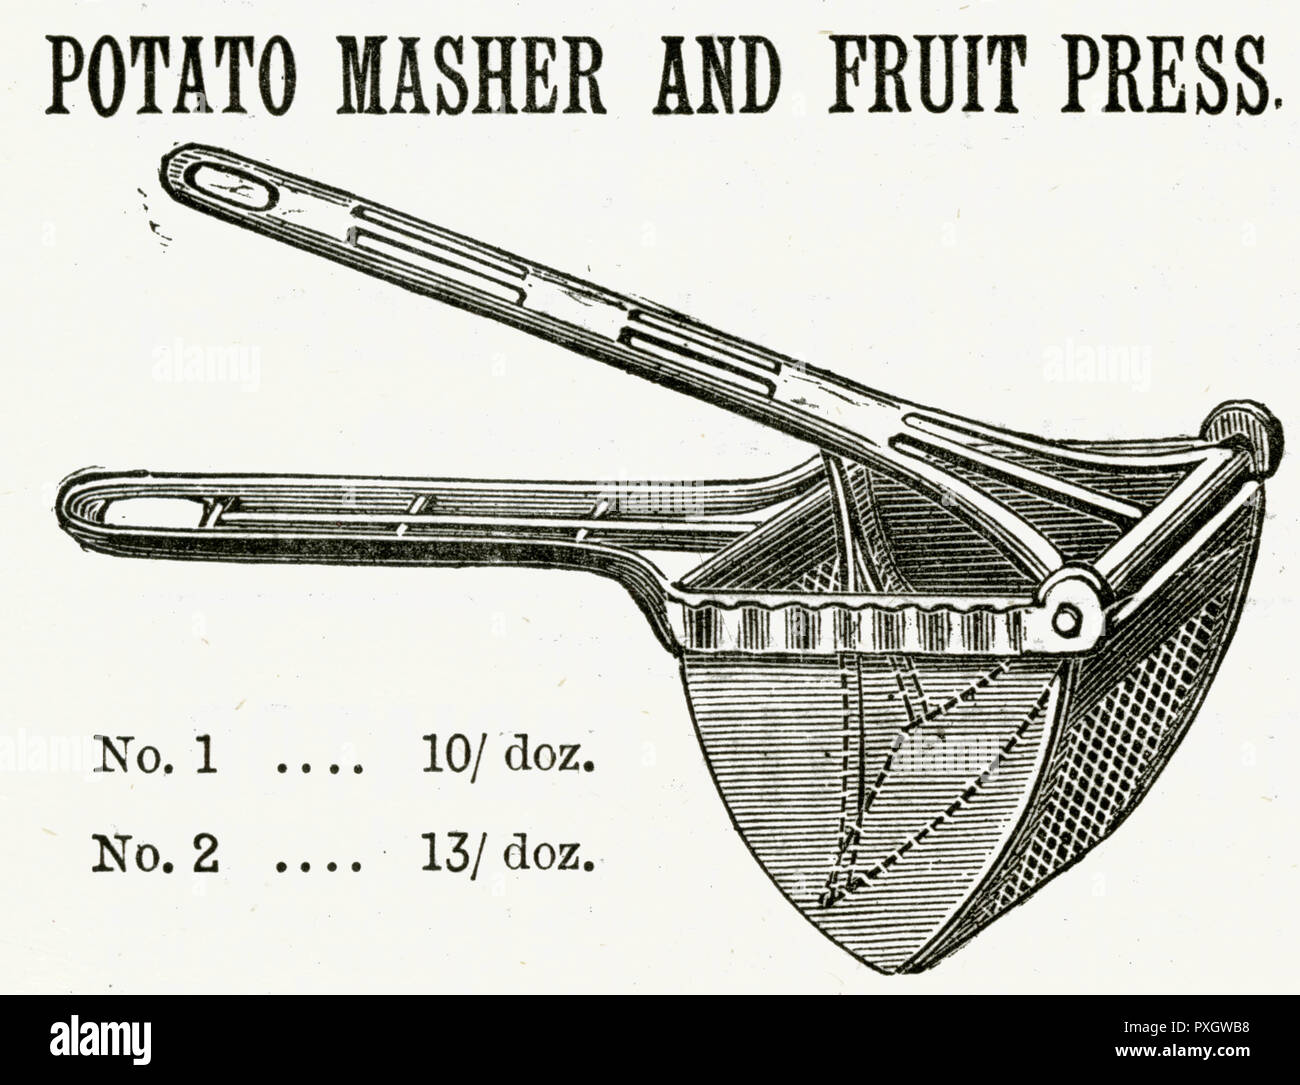 Machacador de patatas y prensa de frutas 1888 Foto de stock